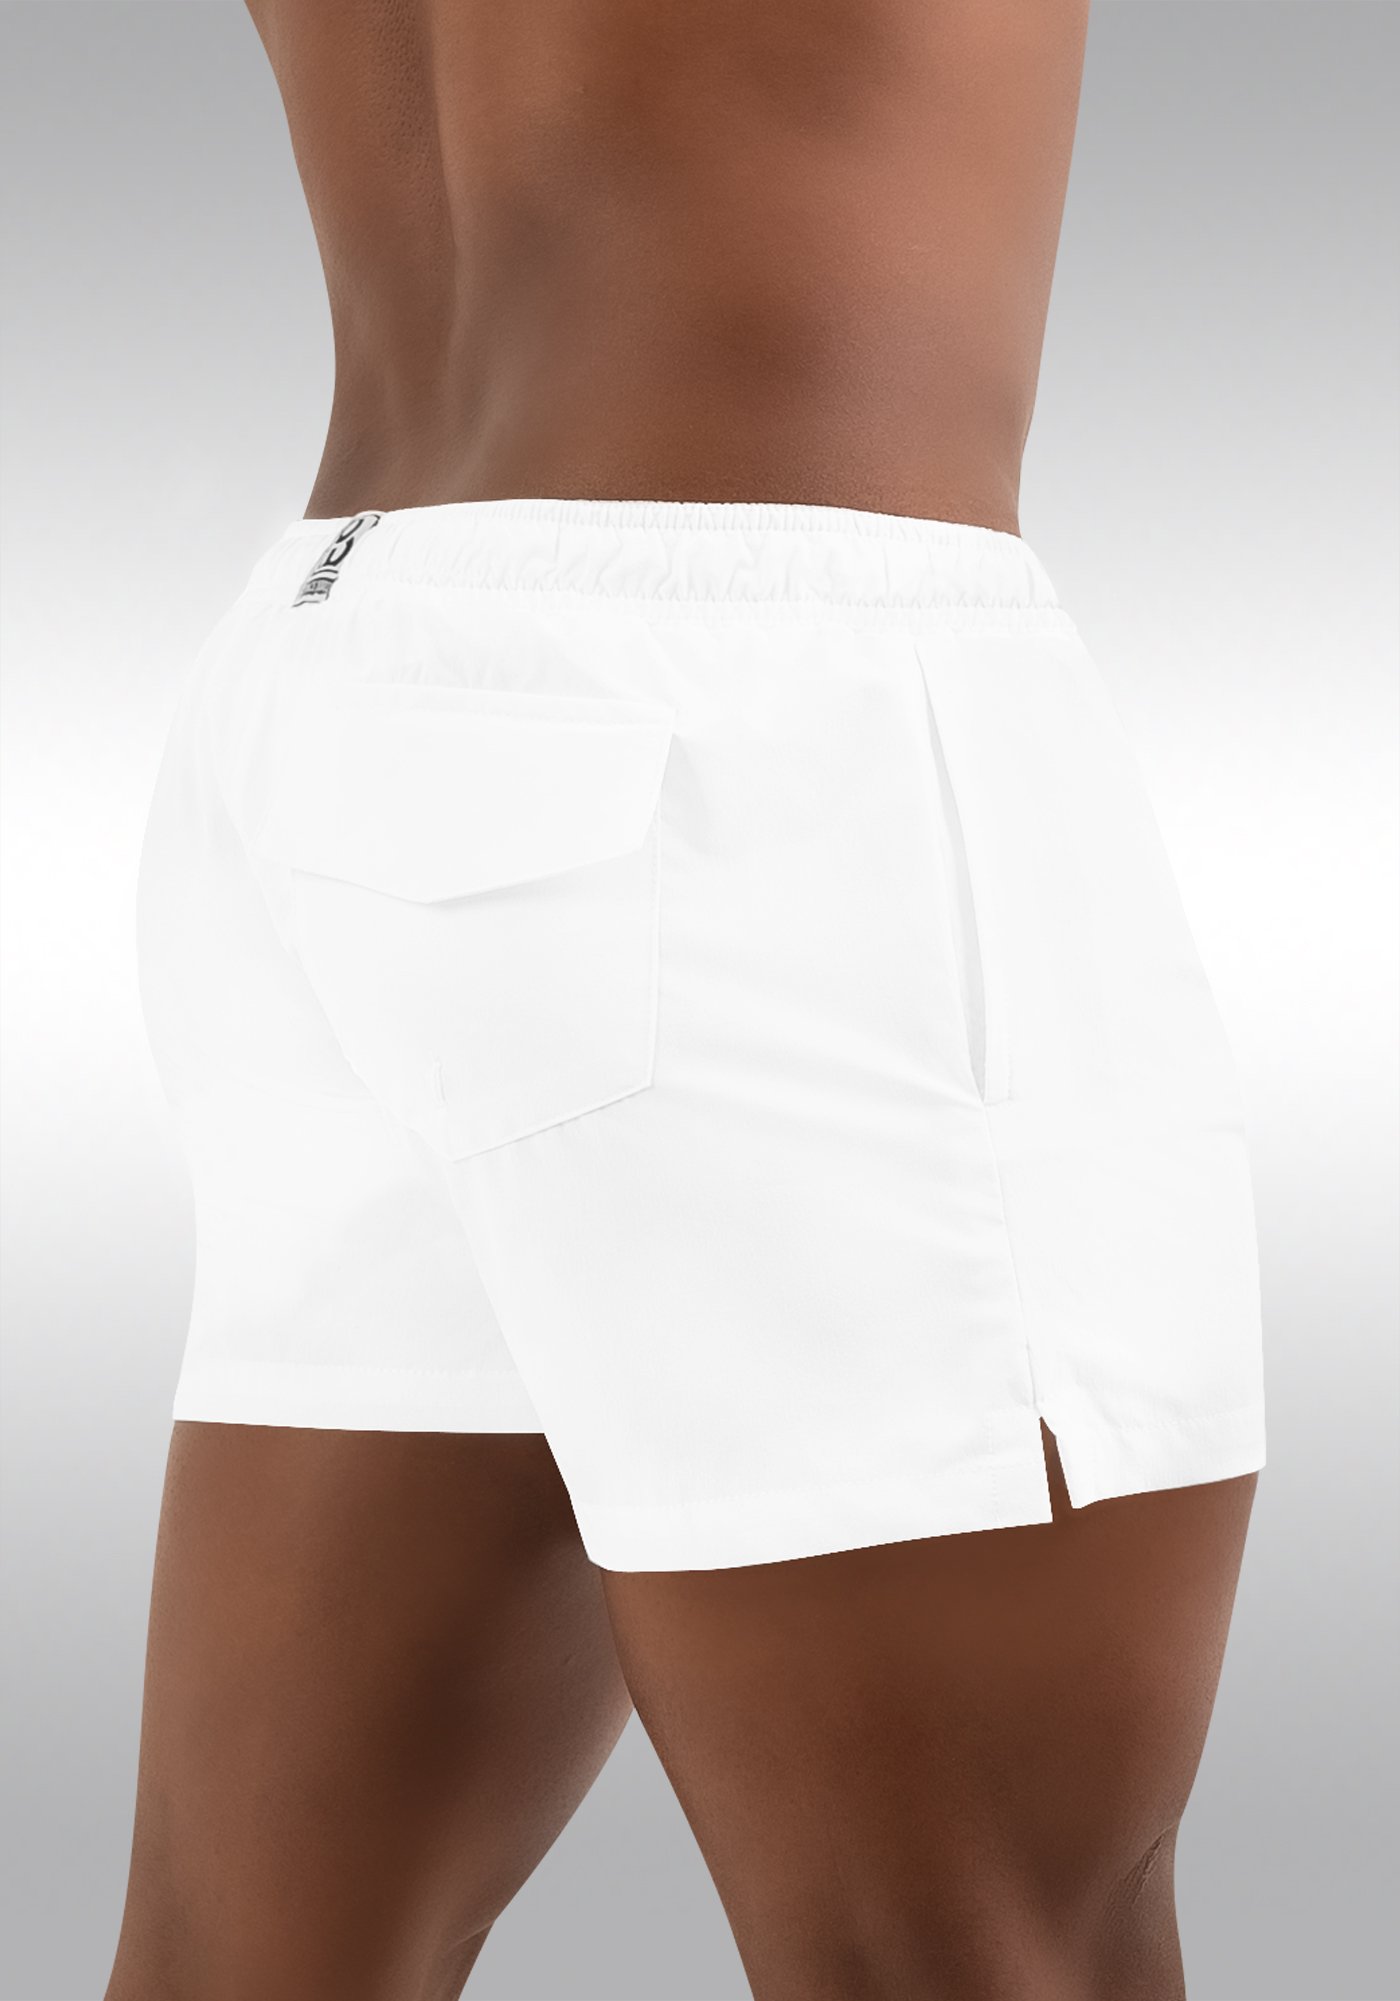 GYM Short White with Built In Pouch Underwear